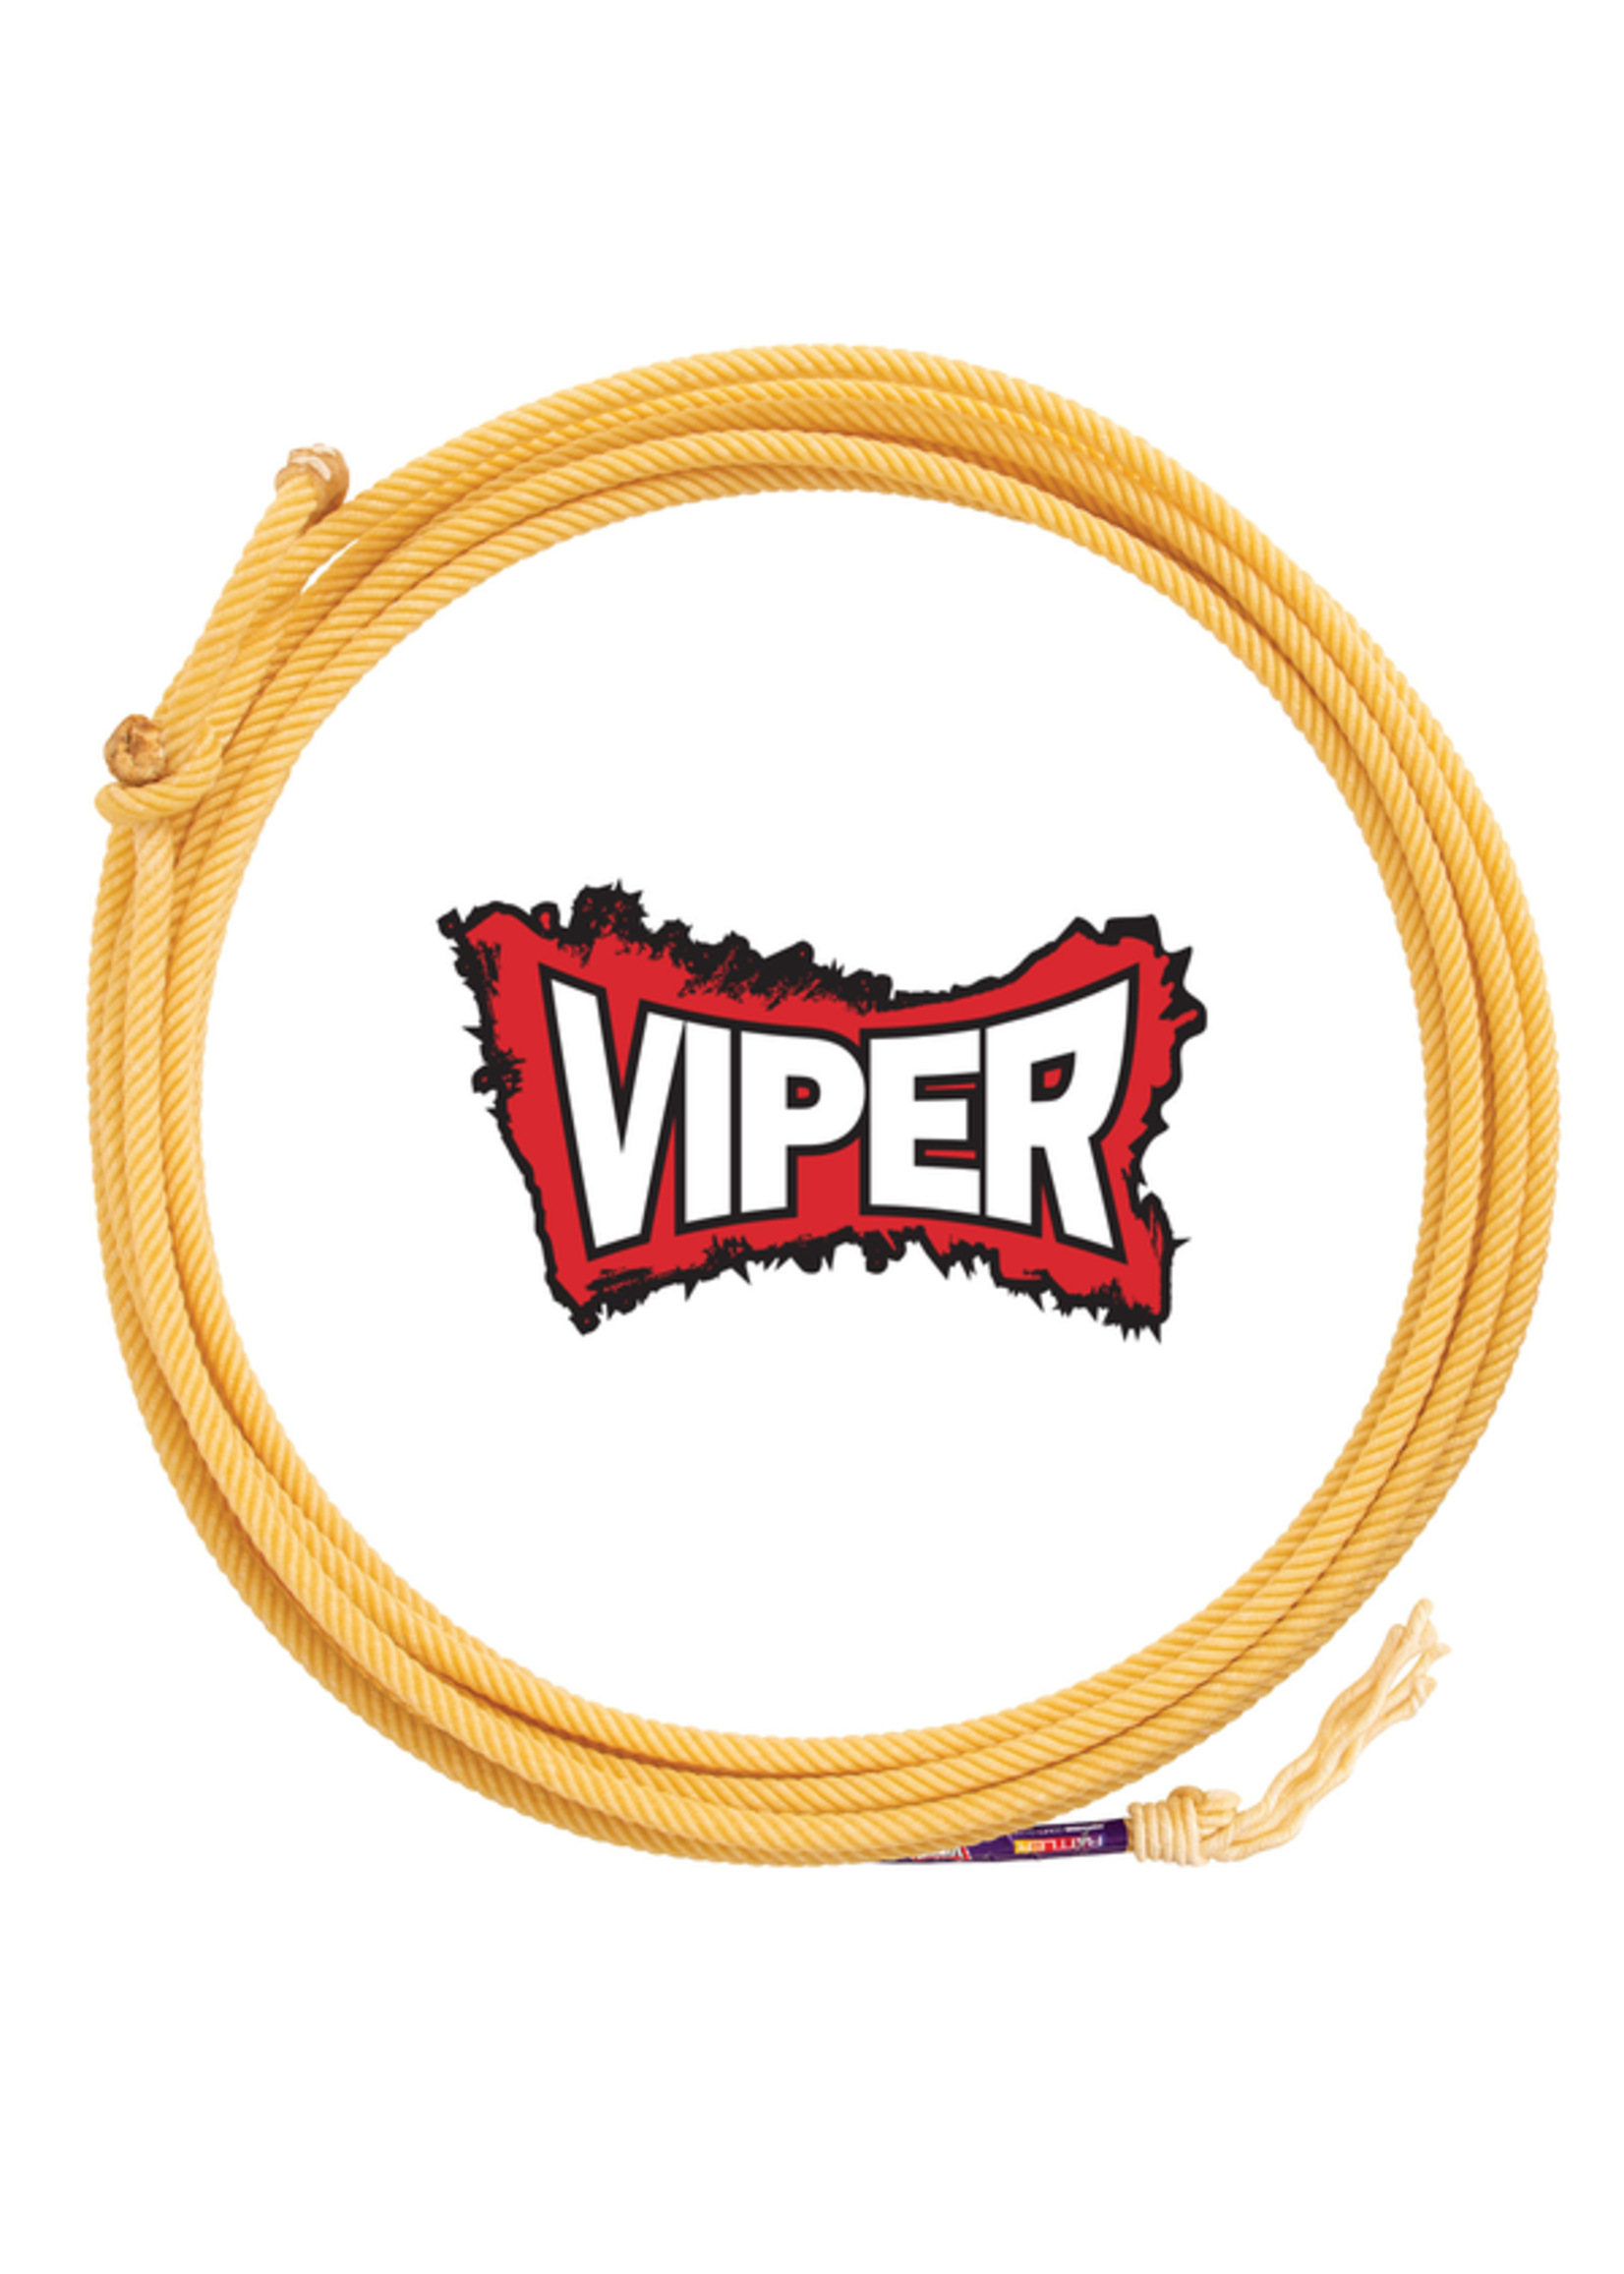 BA/CR - Viper